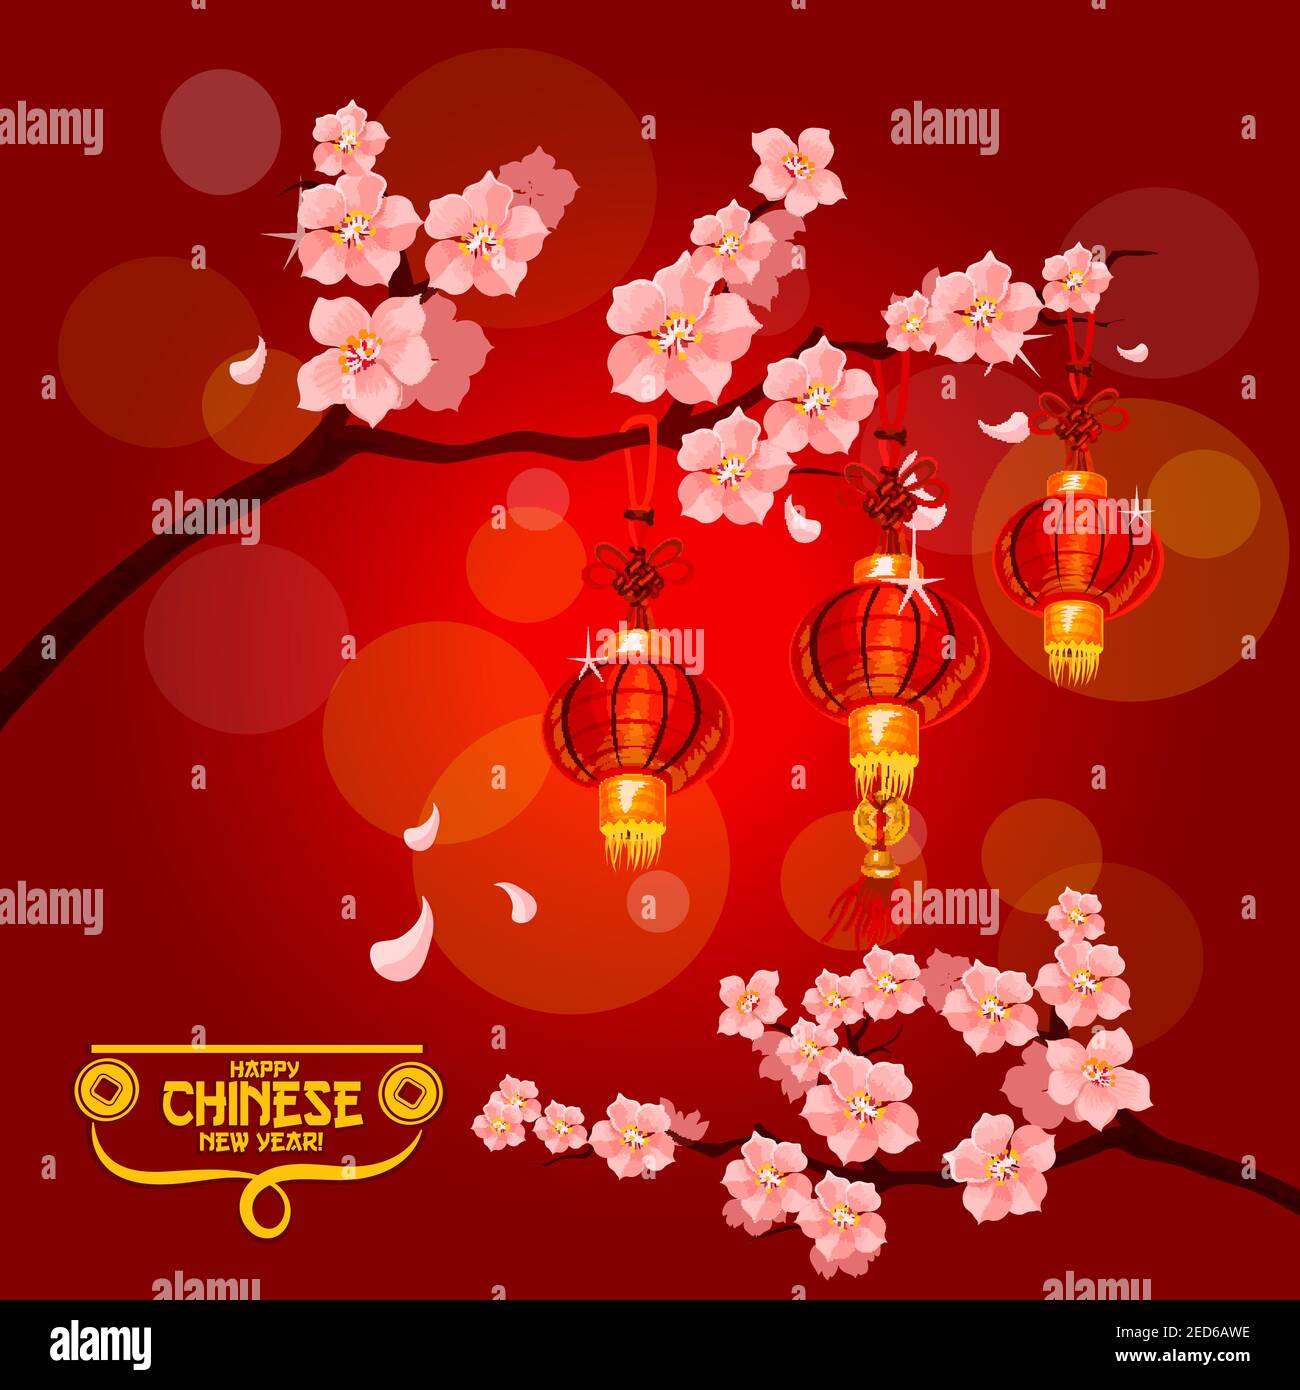 Affiche du nouvel an chinois avec lanternes en papier rouge accrochées aux branches d'un prunier fleuri aux fleurs roses. Fleur de prune avec lanternes pour la Chine ne Illustration de Vecteur